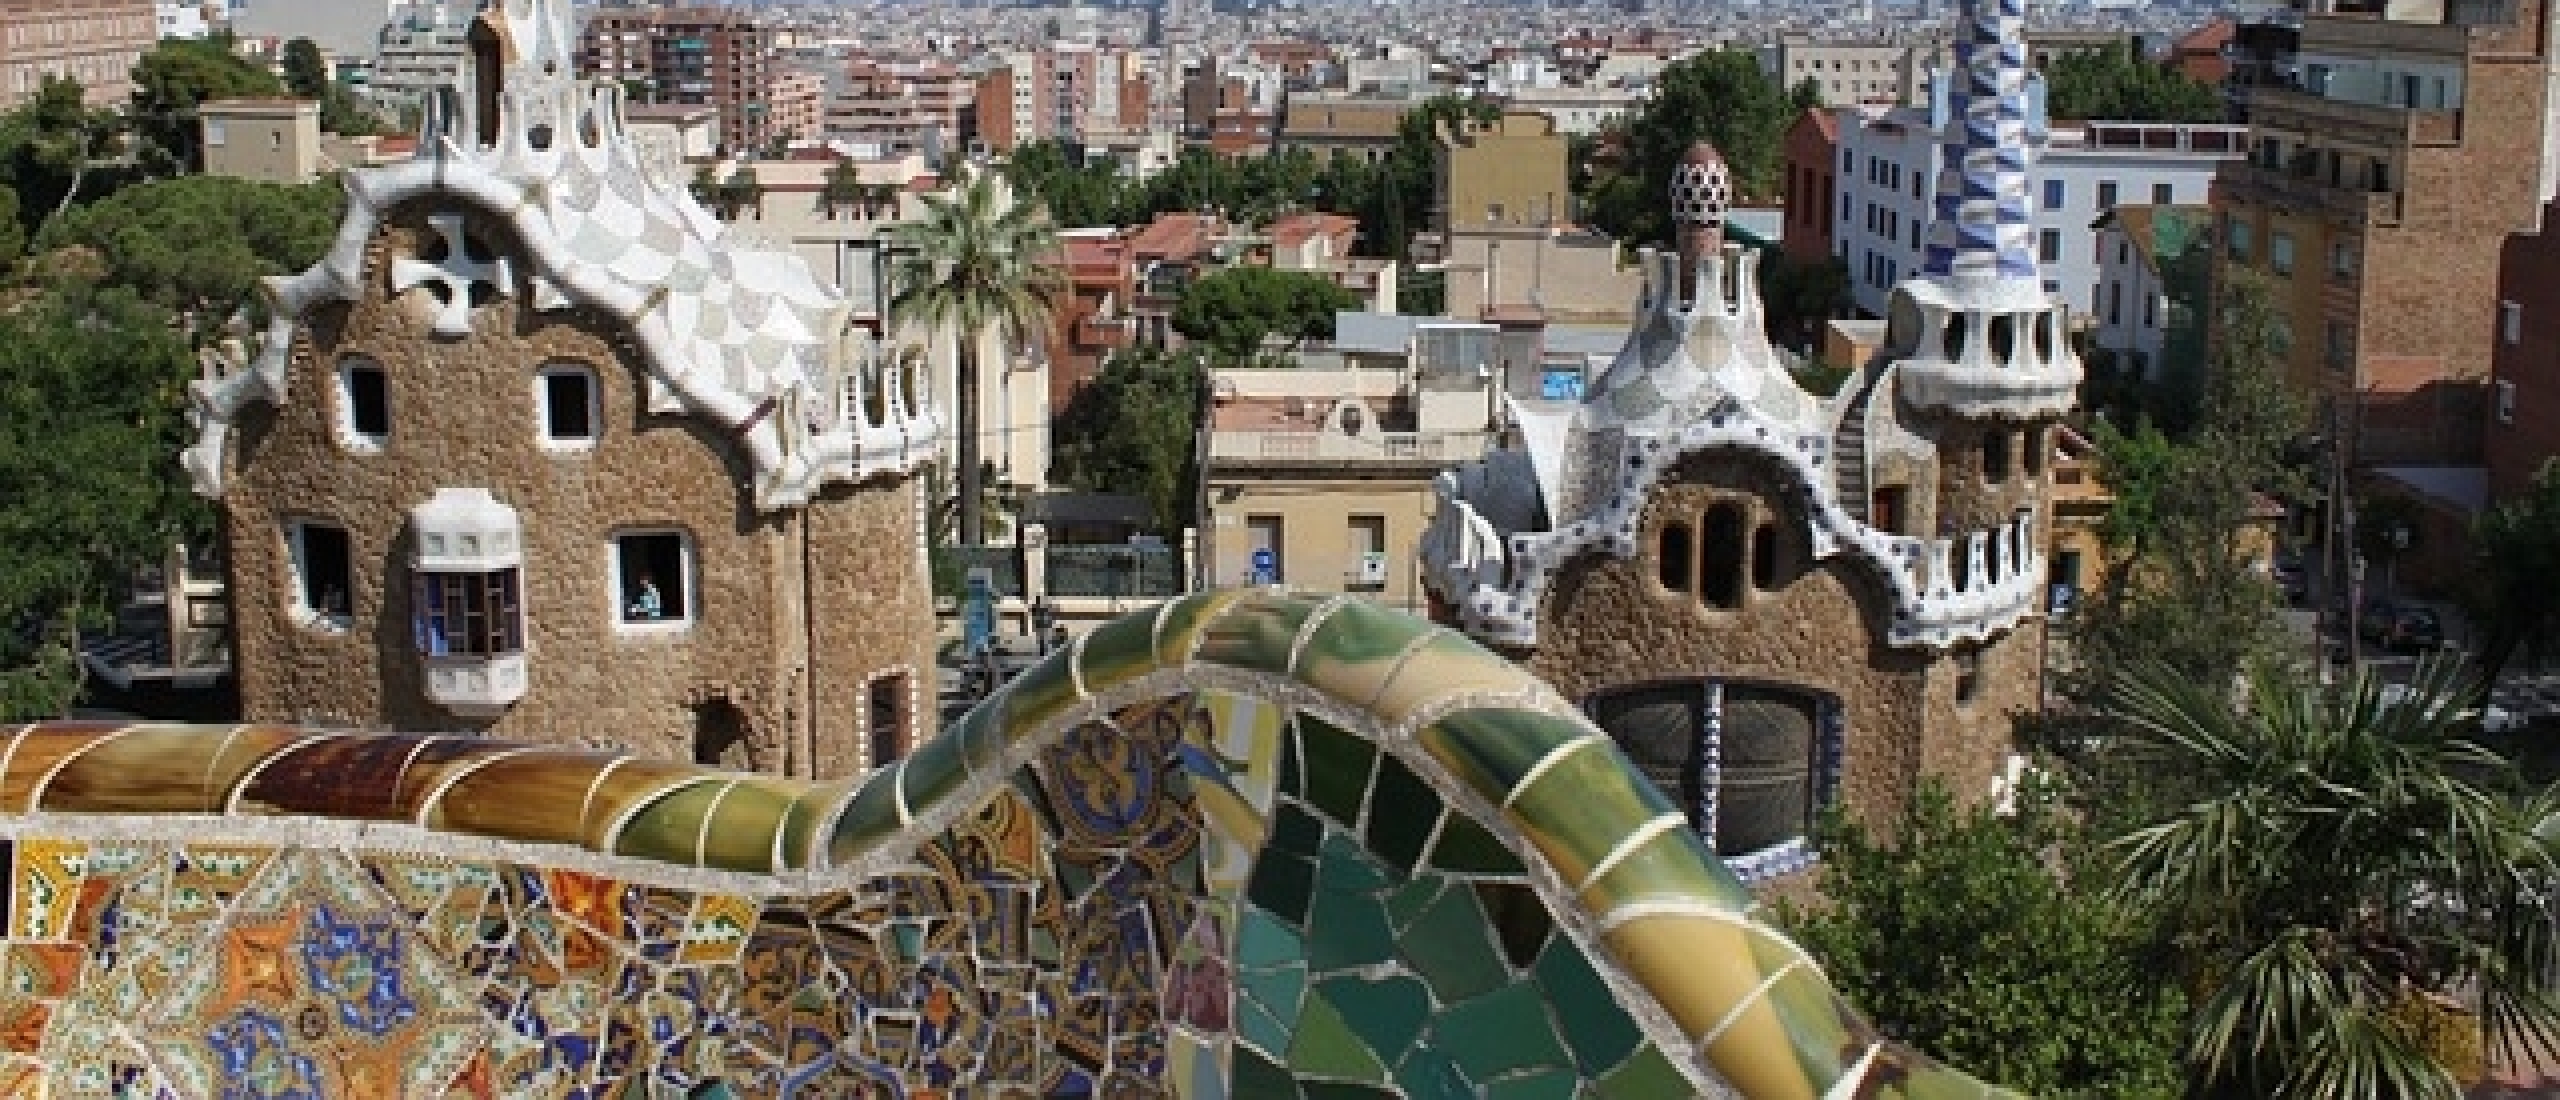 De top 7 van gratis bezienswaardigheden in Barcelona 2024